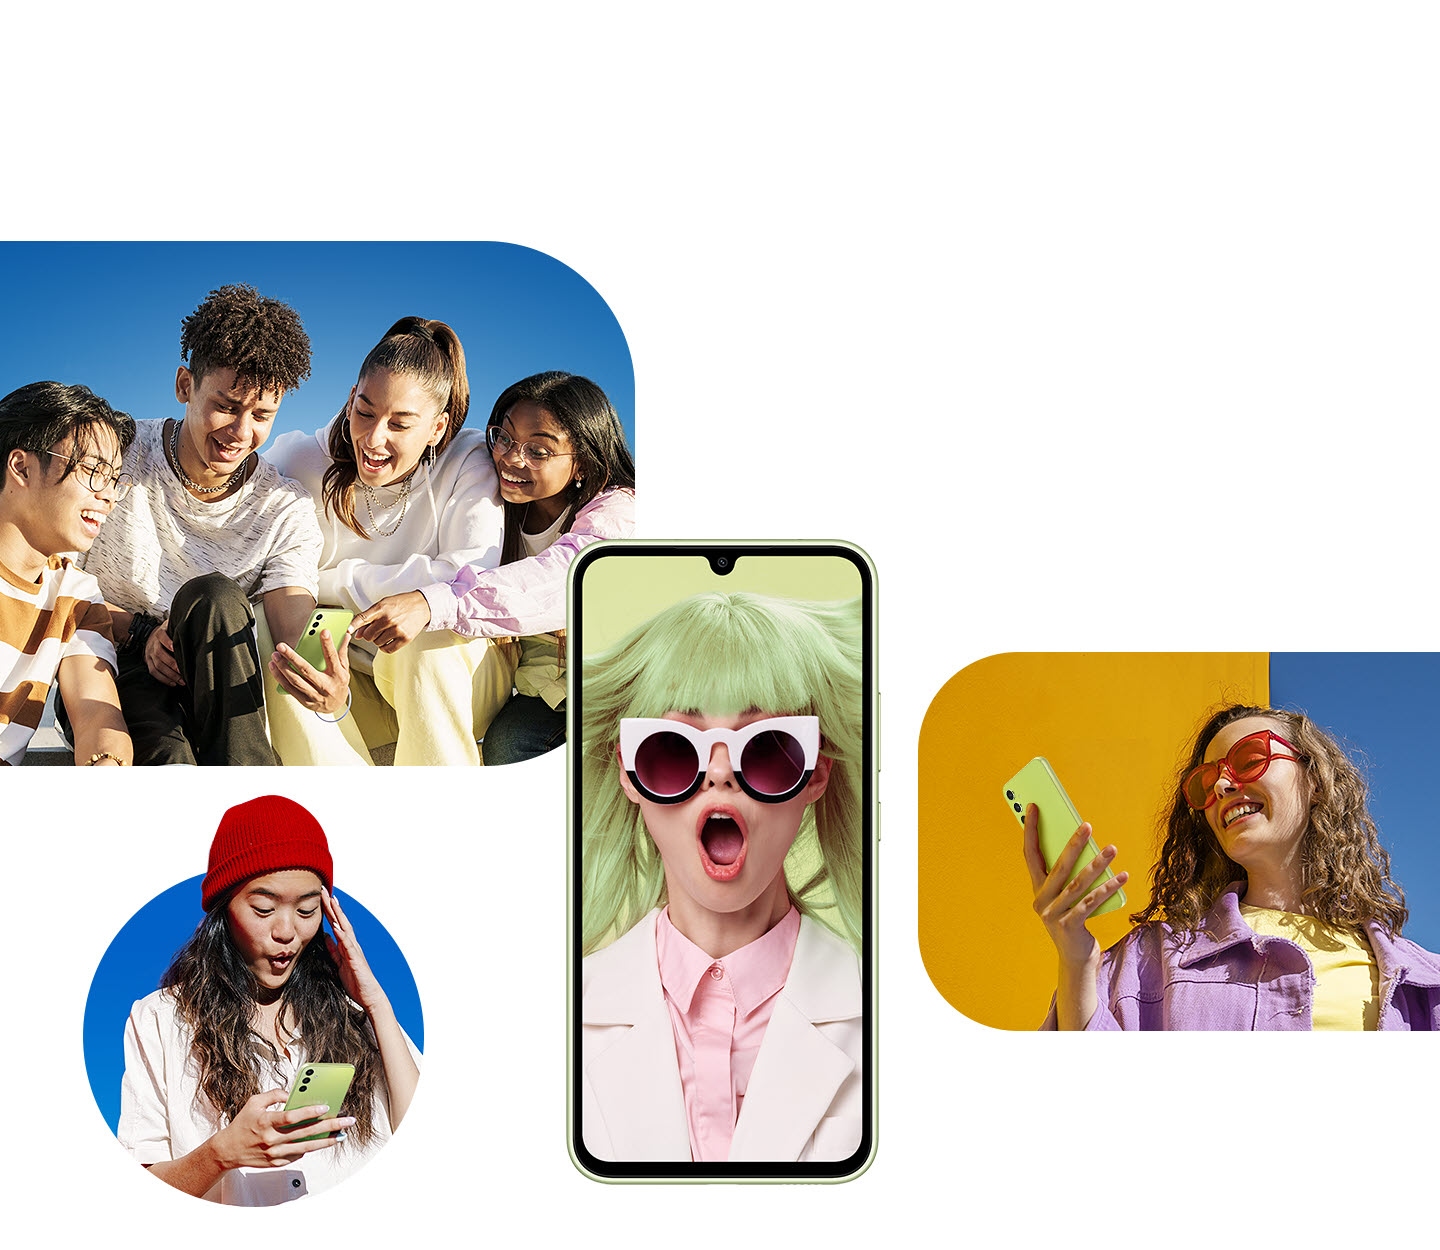 Al centro dell'immagine, un Galaxy A34 5G mostra sul display una donna con gli occhiali da sole vestita in colori accesi. Intorno a questo dispositivo, sono visualizzate immagini di un gruppo di amici e di due donne che guardano i loro dispositivi alla piena luce del giorno. 